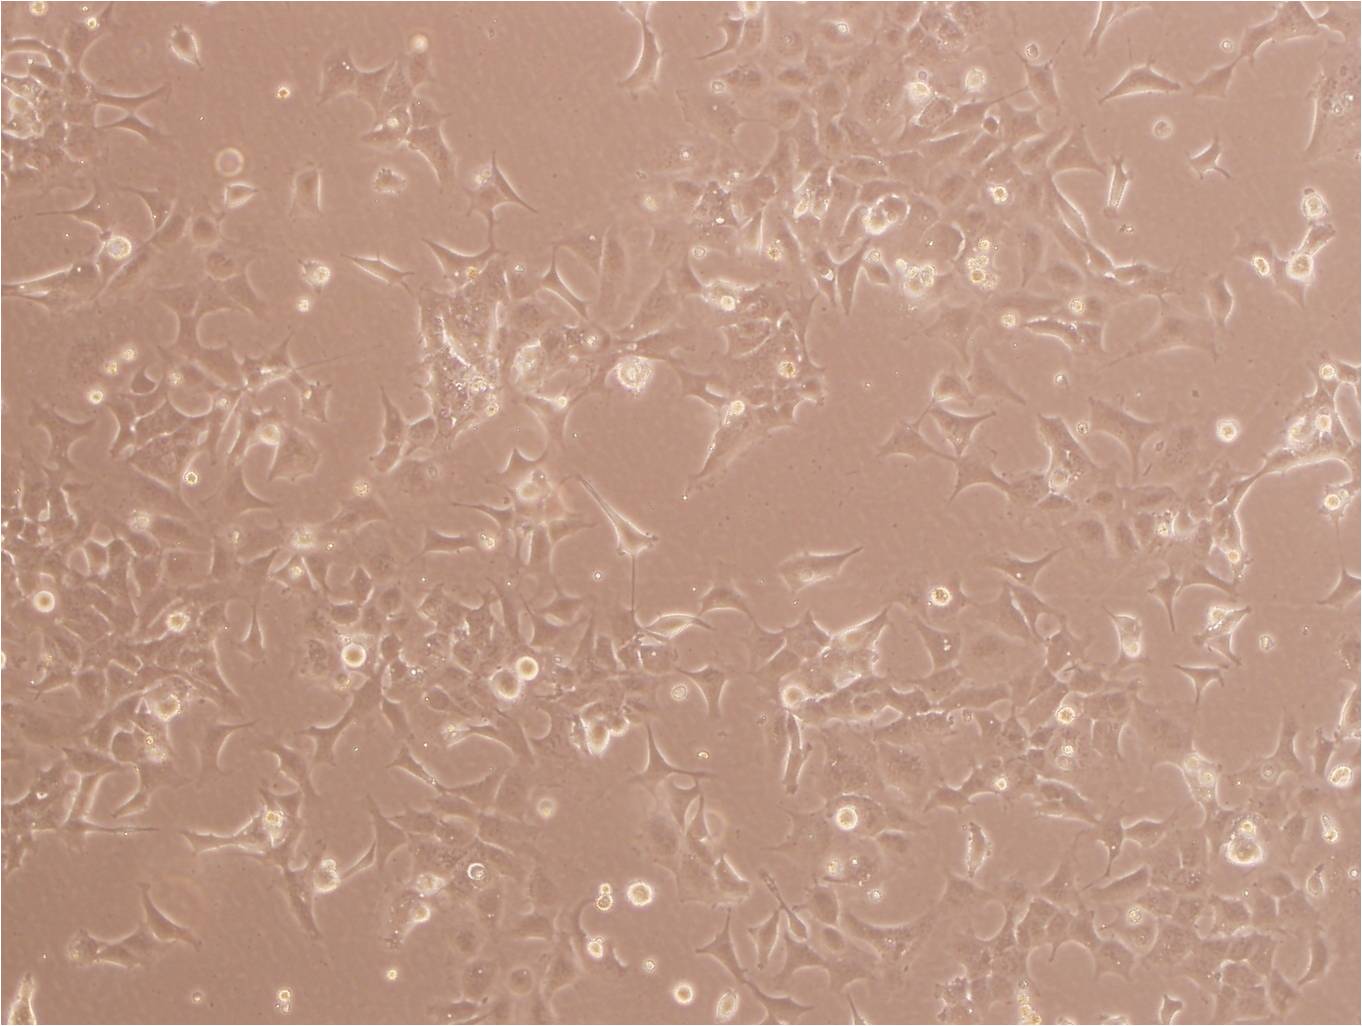 TE-11:人食管癌复苏细胞(提供STR鉴定图谱),TE-11